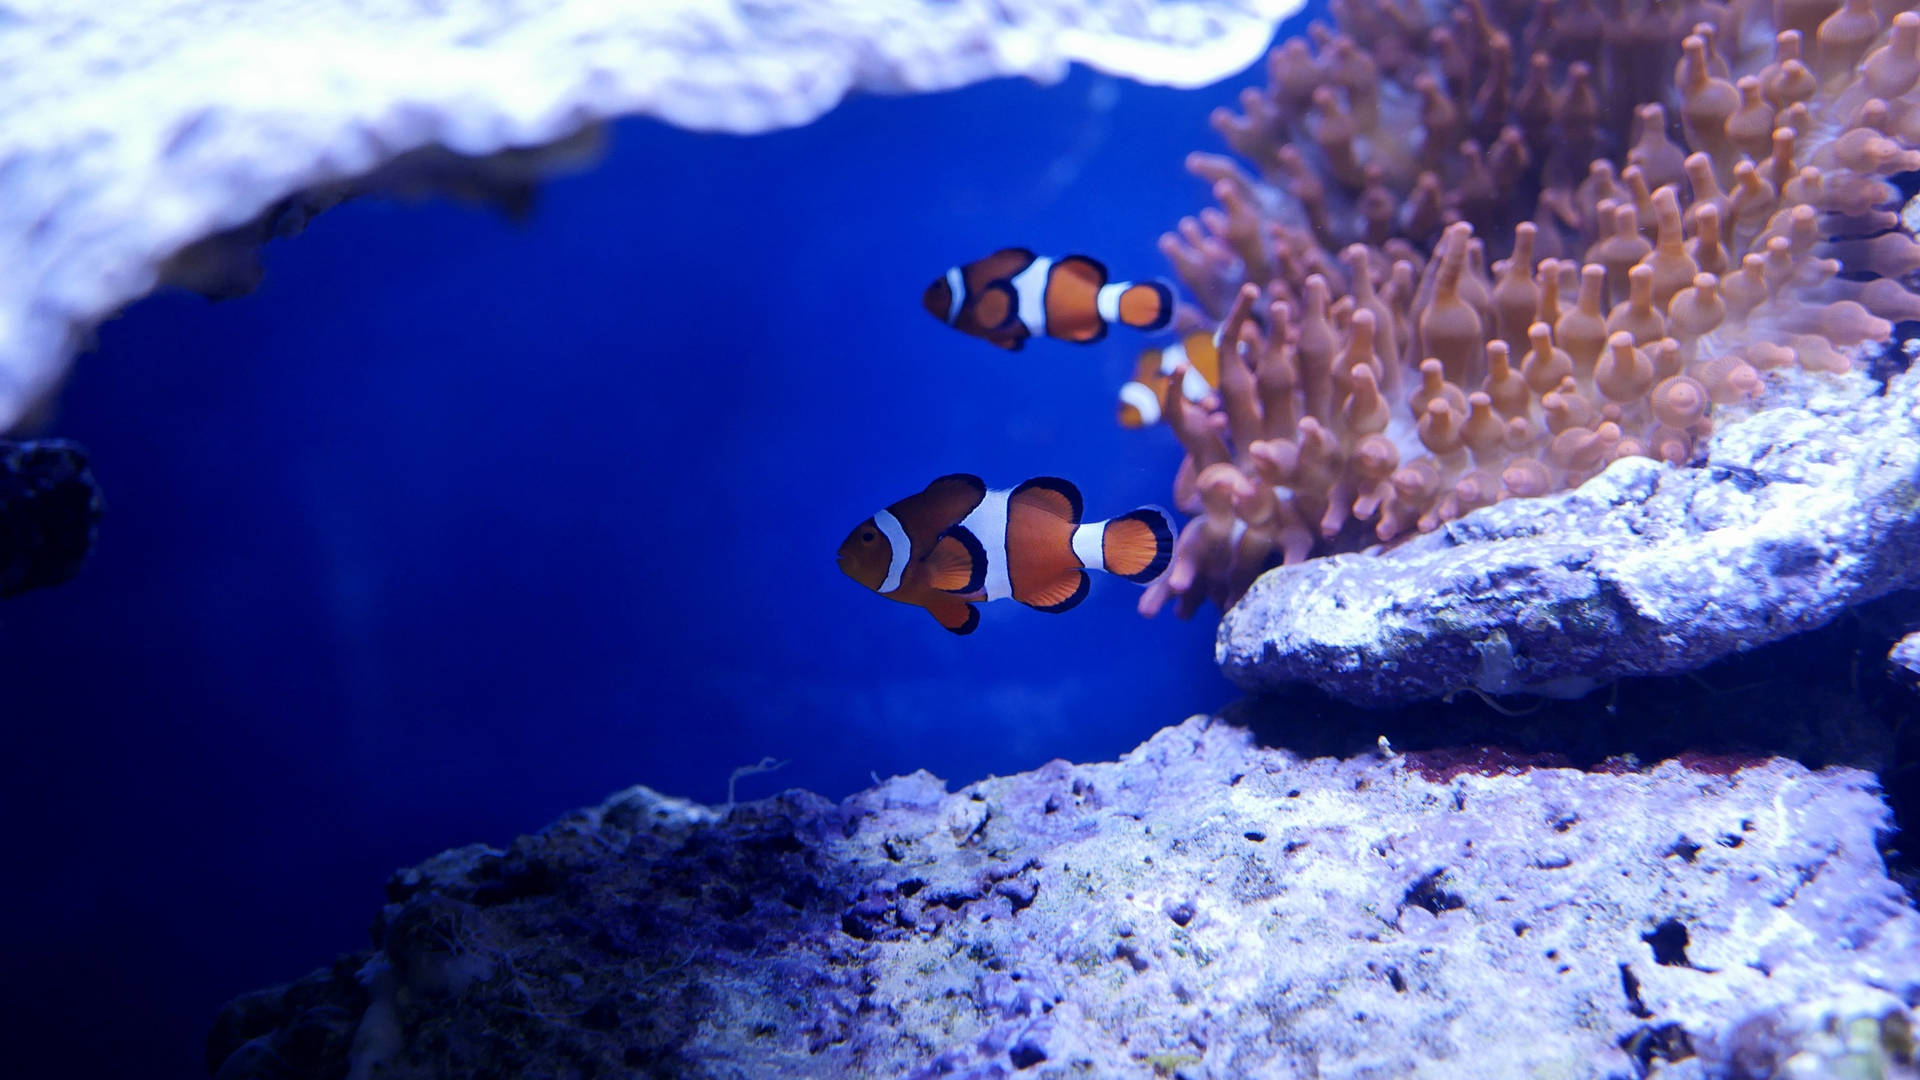 2560 X 1440 Sea Clown Fish Picture